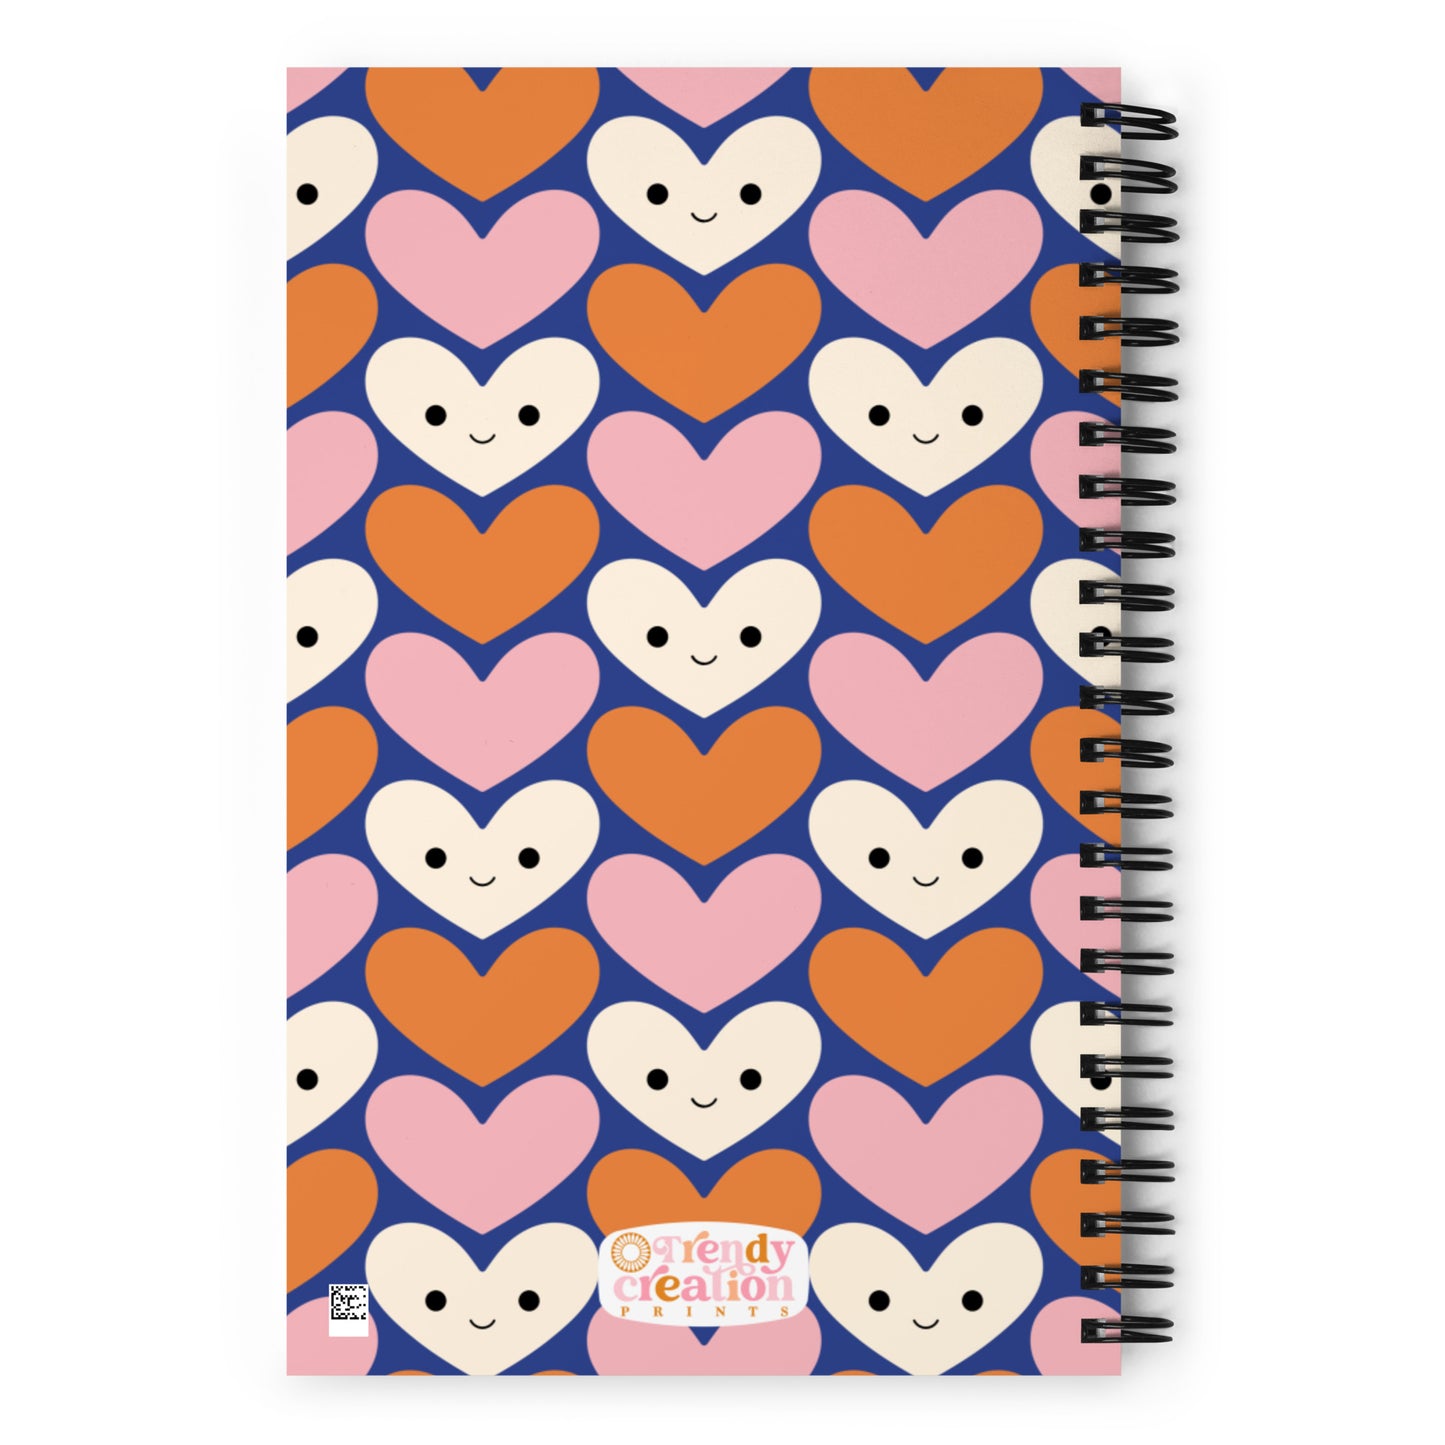 Cute Heart Spiral Notebook Multi Blue